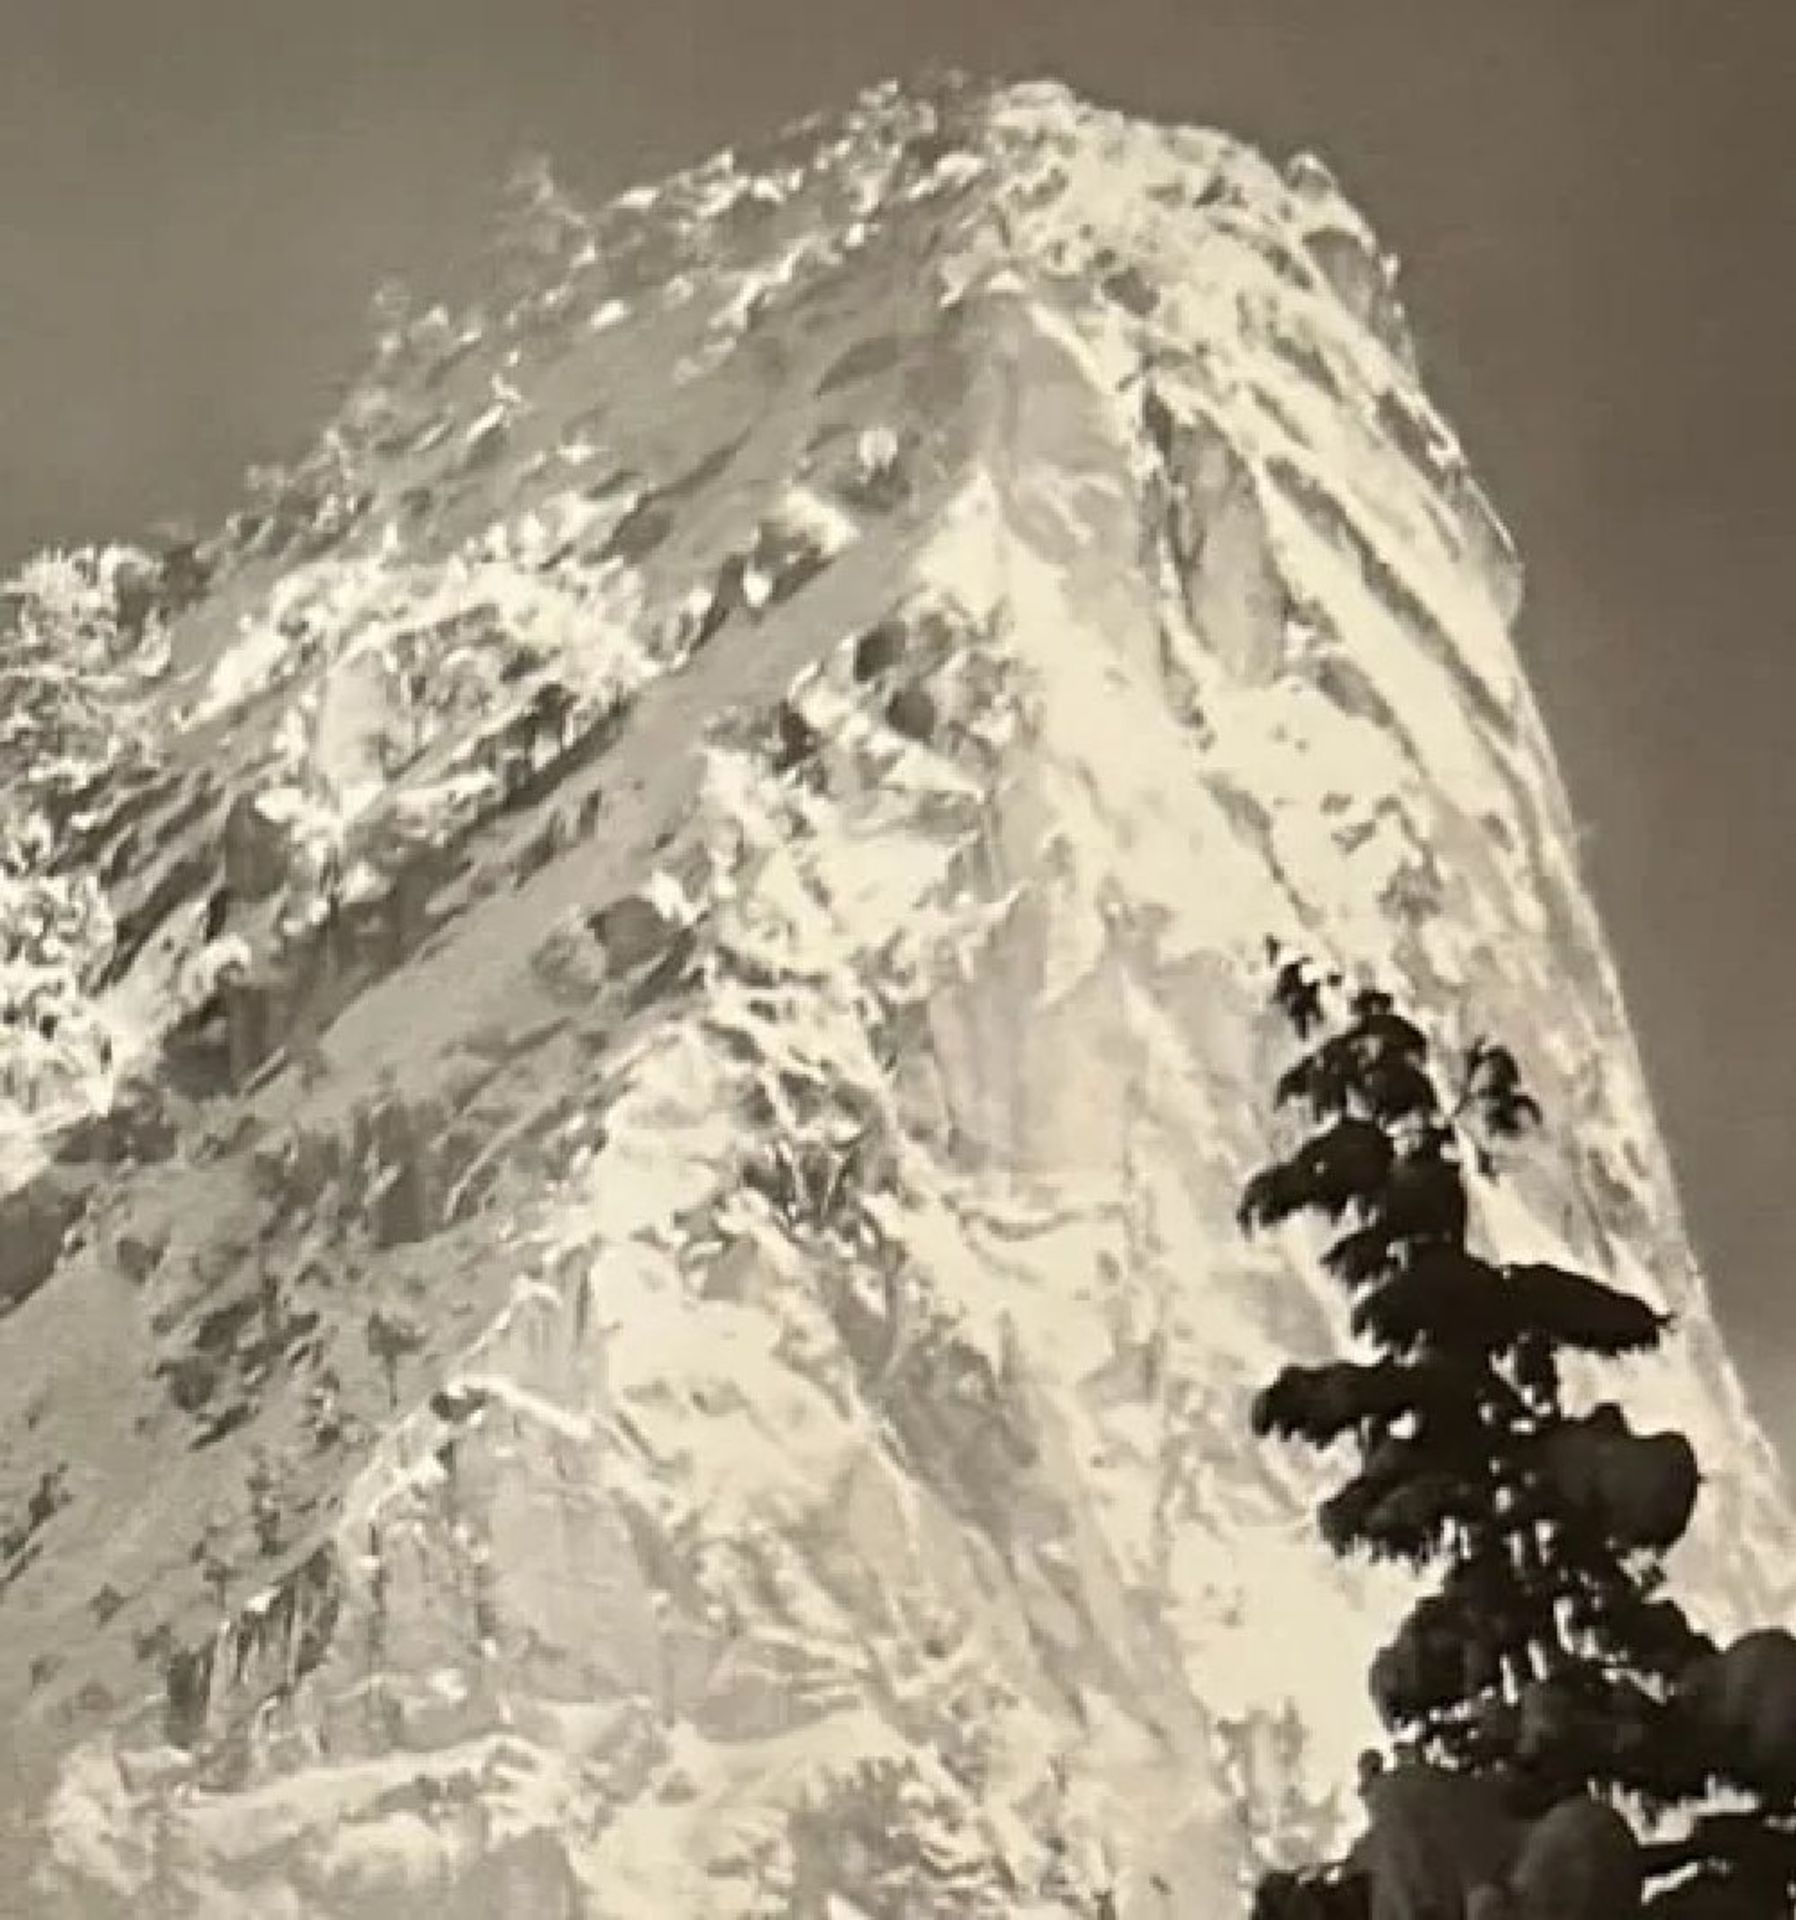 Ansel Adams "Eagle Peak" Print - Image 4 of 6